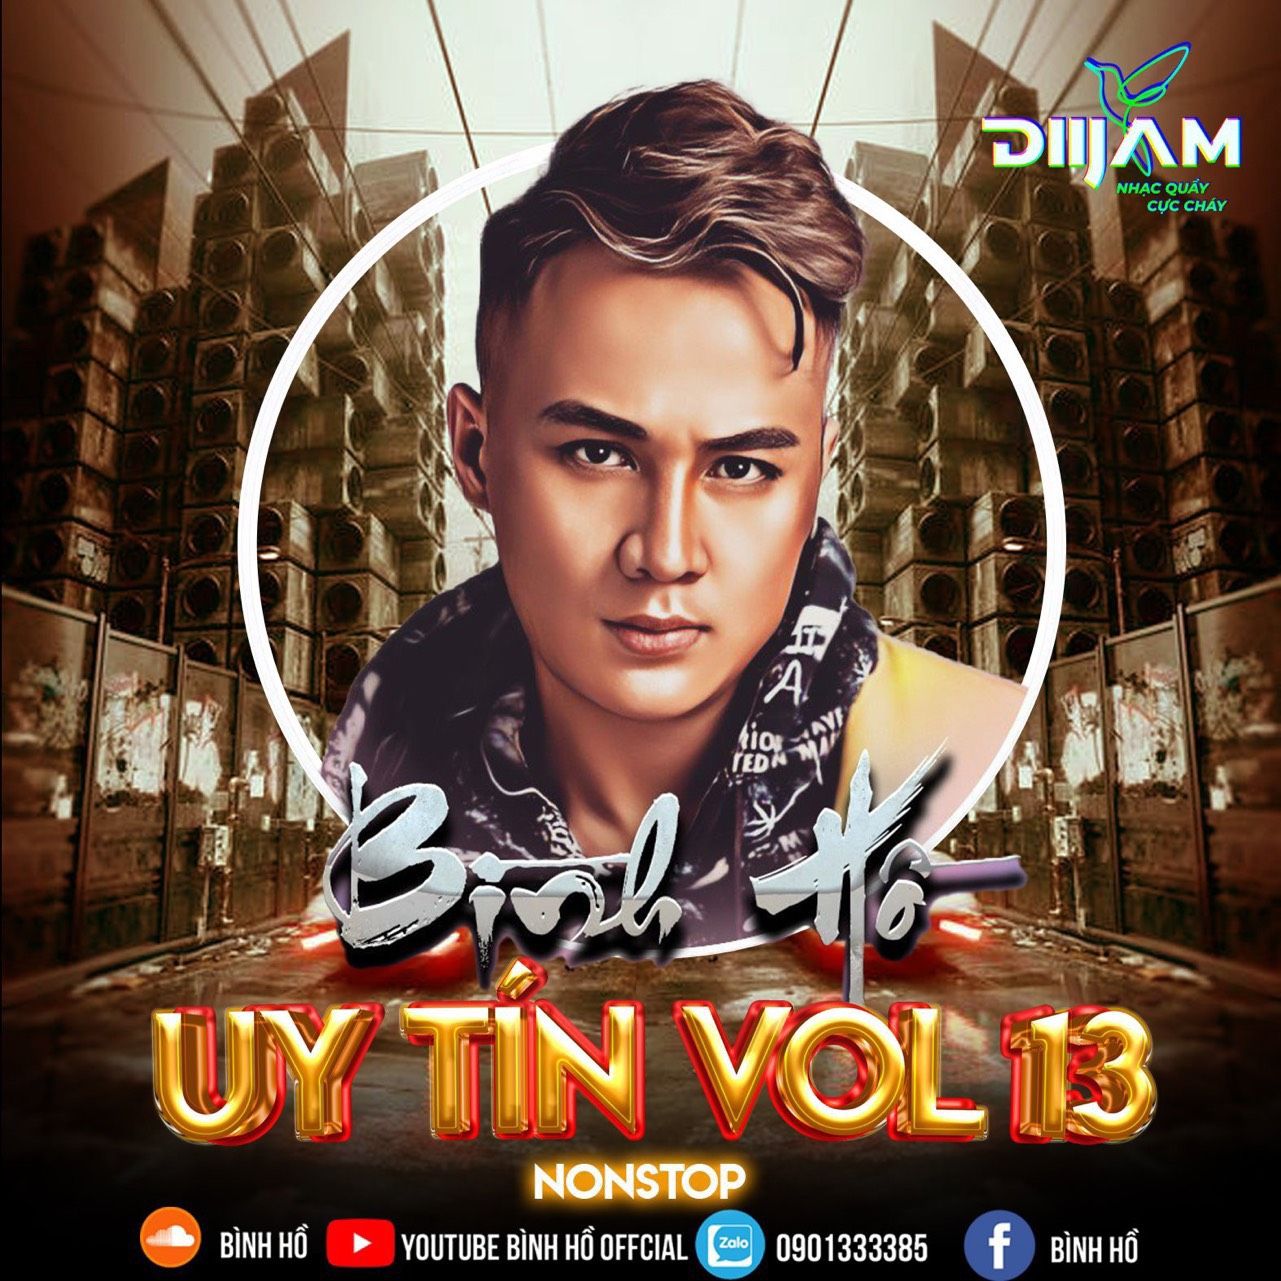 ດາວໂຫລດ Nonstop Uy Tín Vol.13 ( Bình Hồ Mix)